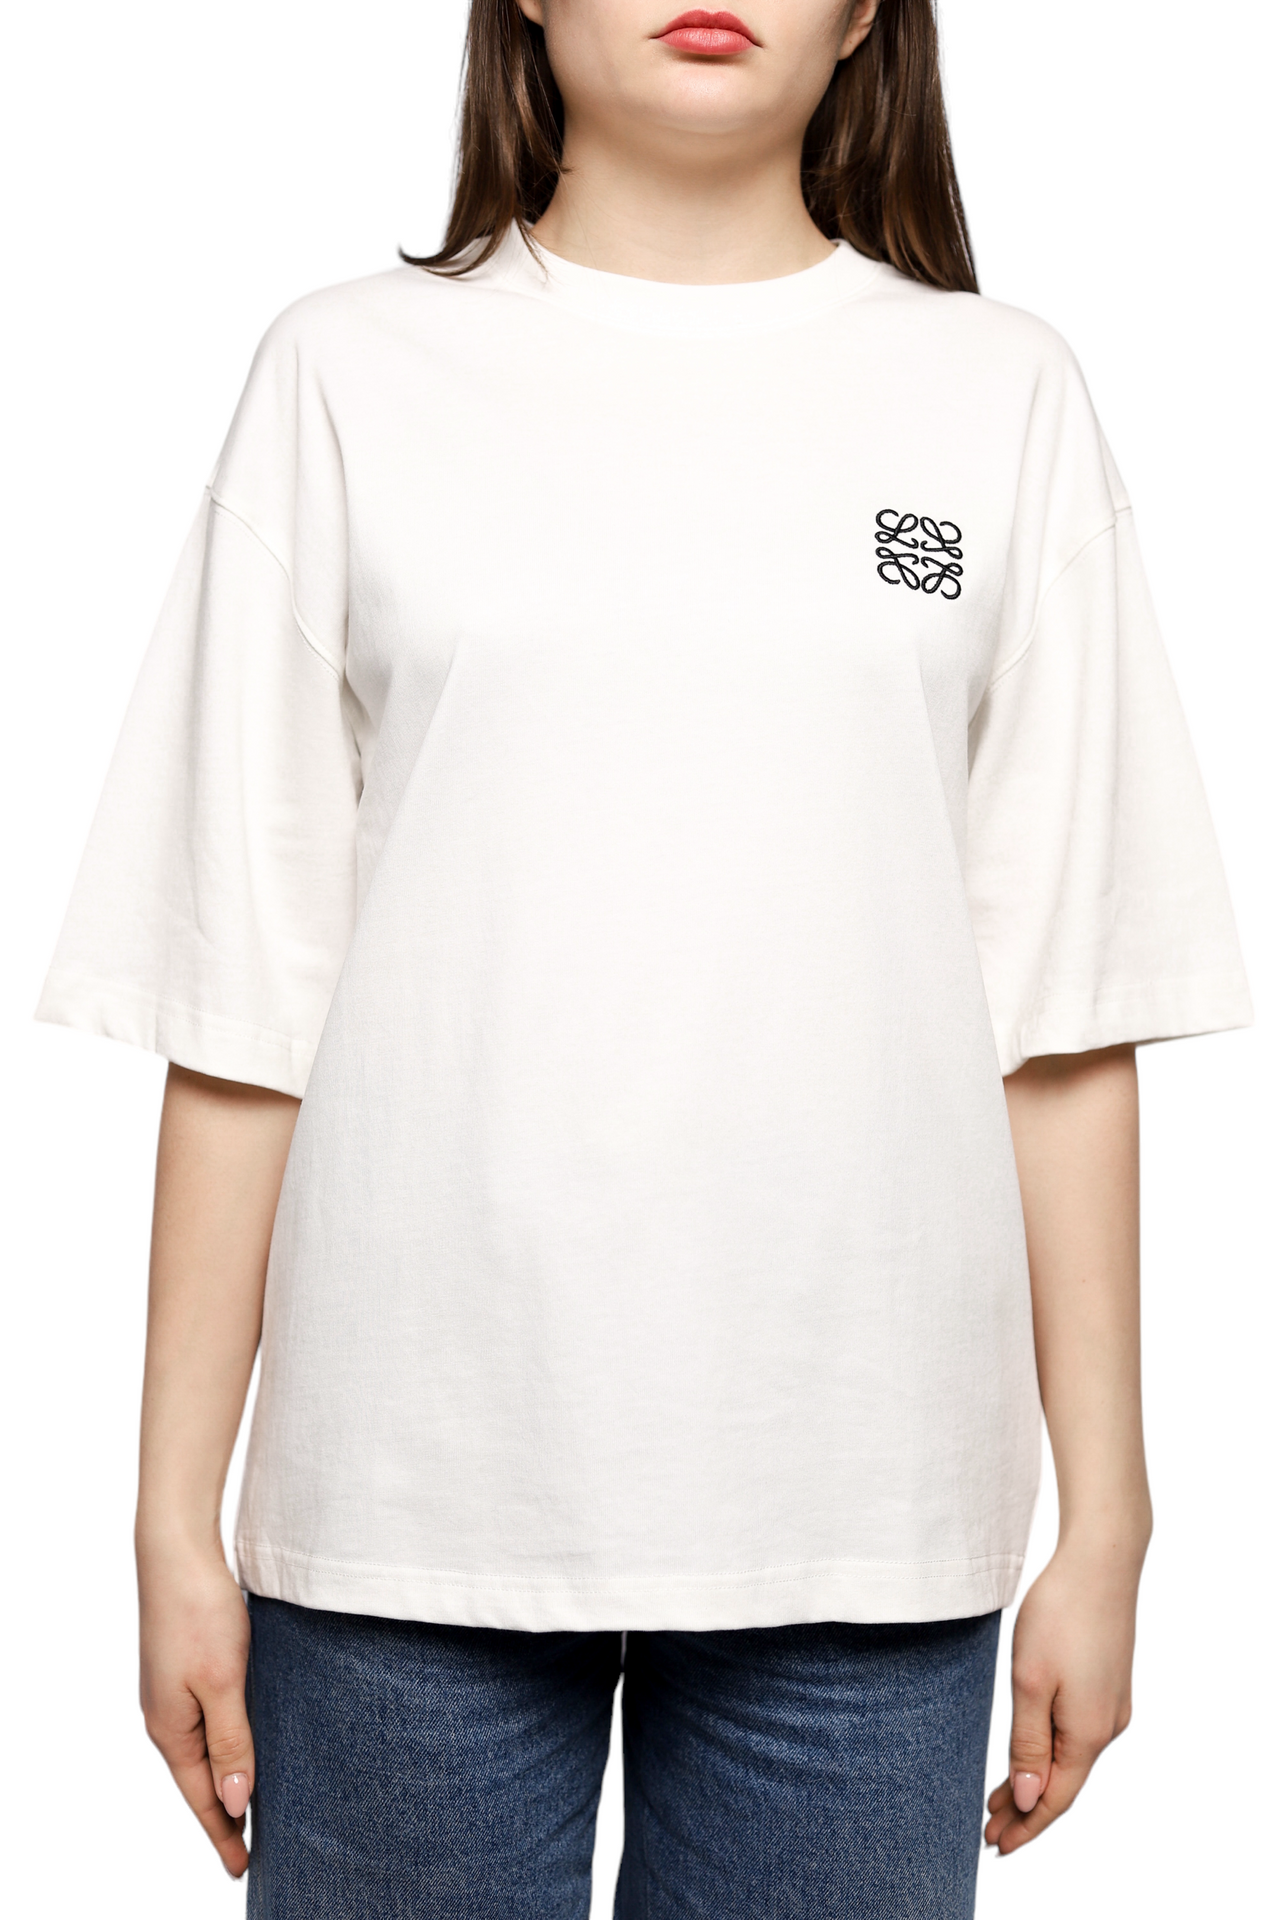 Loewe Anagram T-shirt White